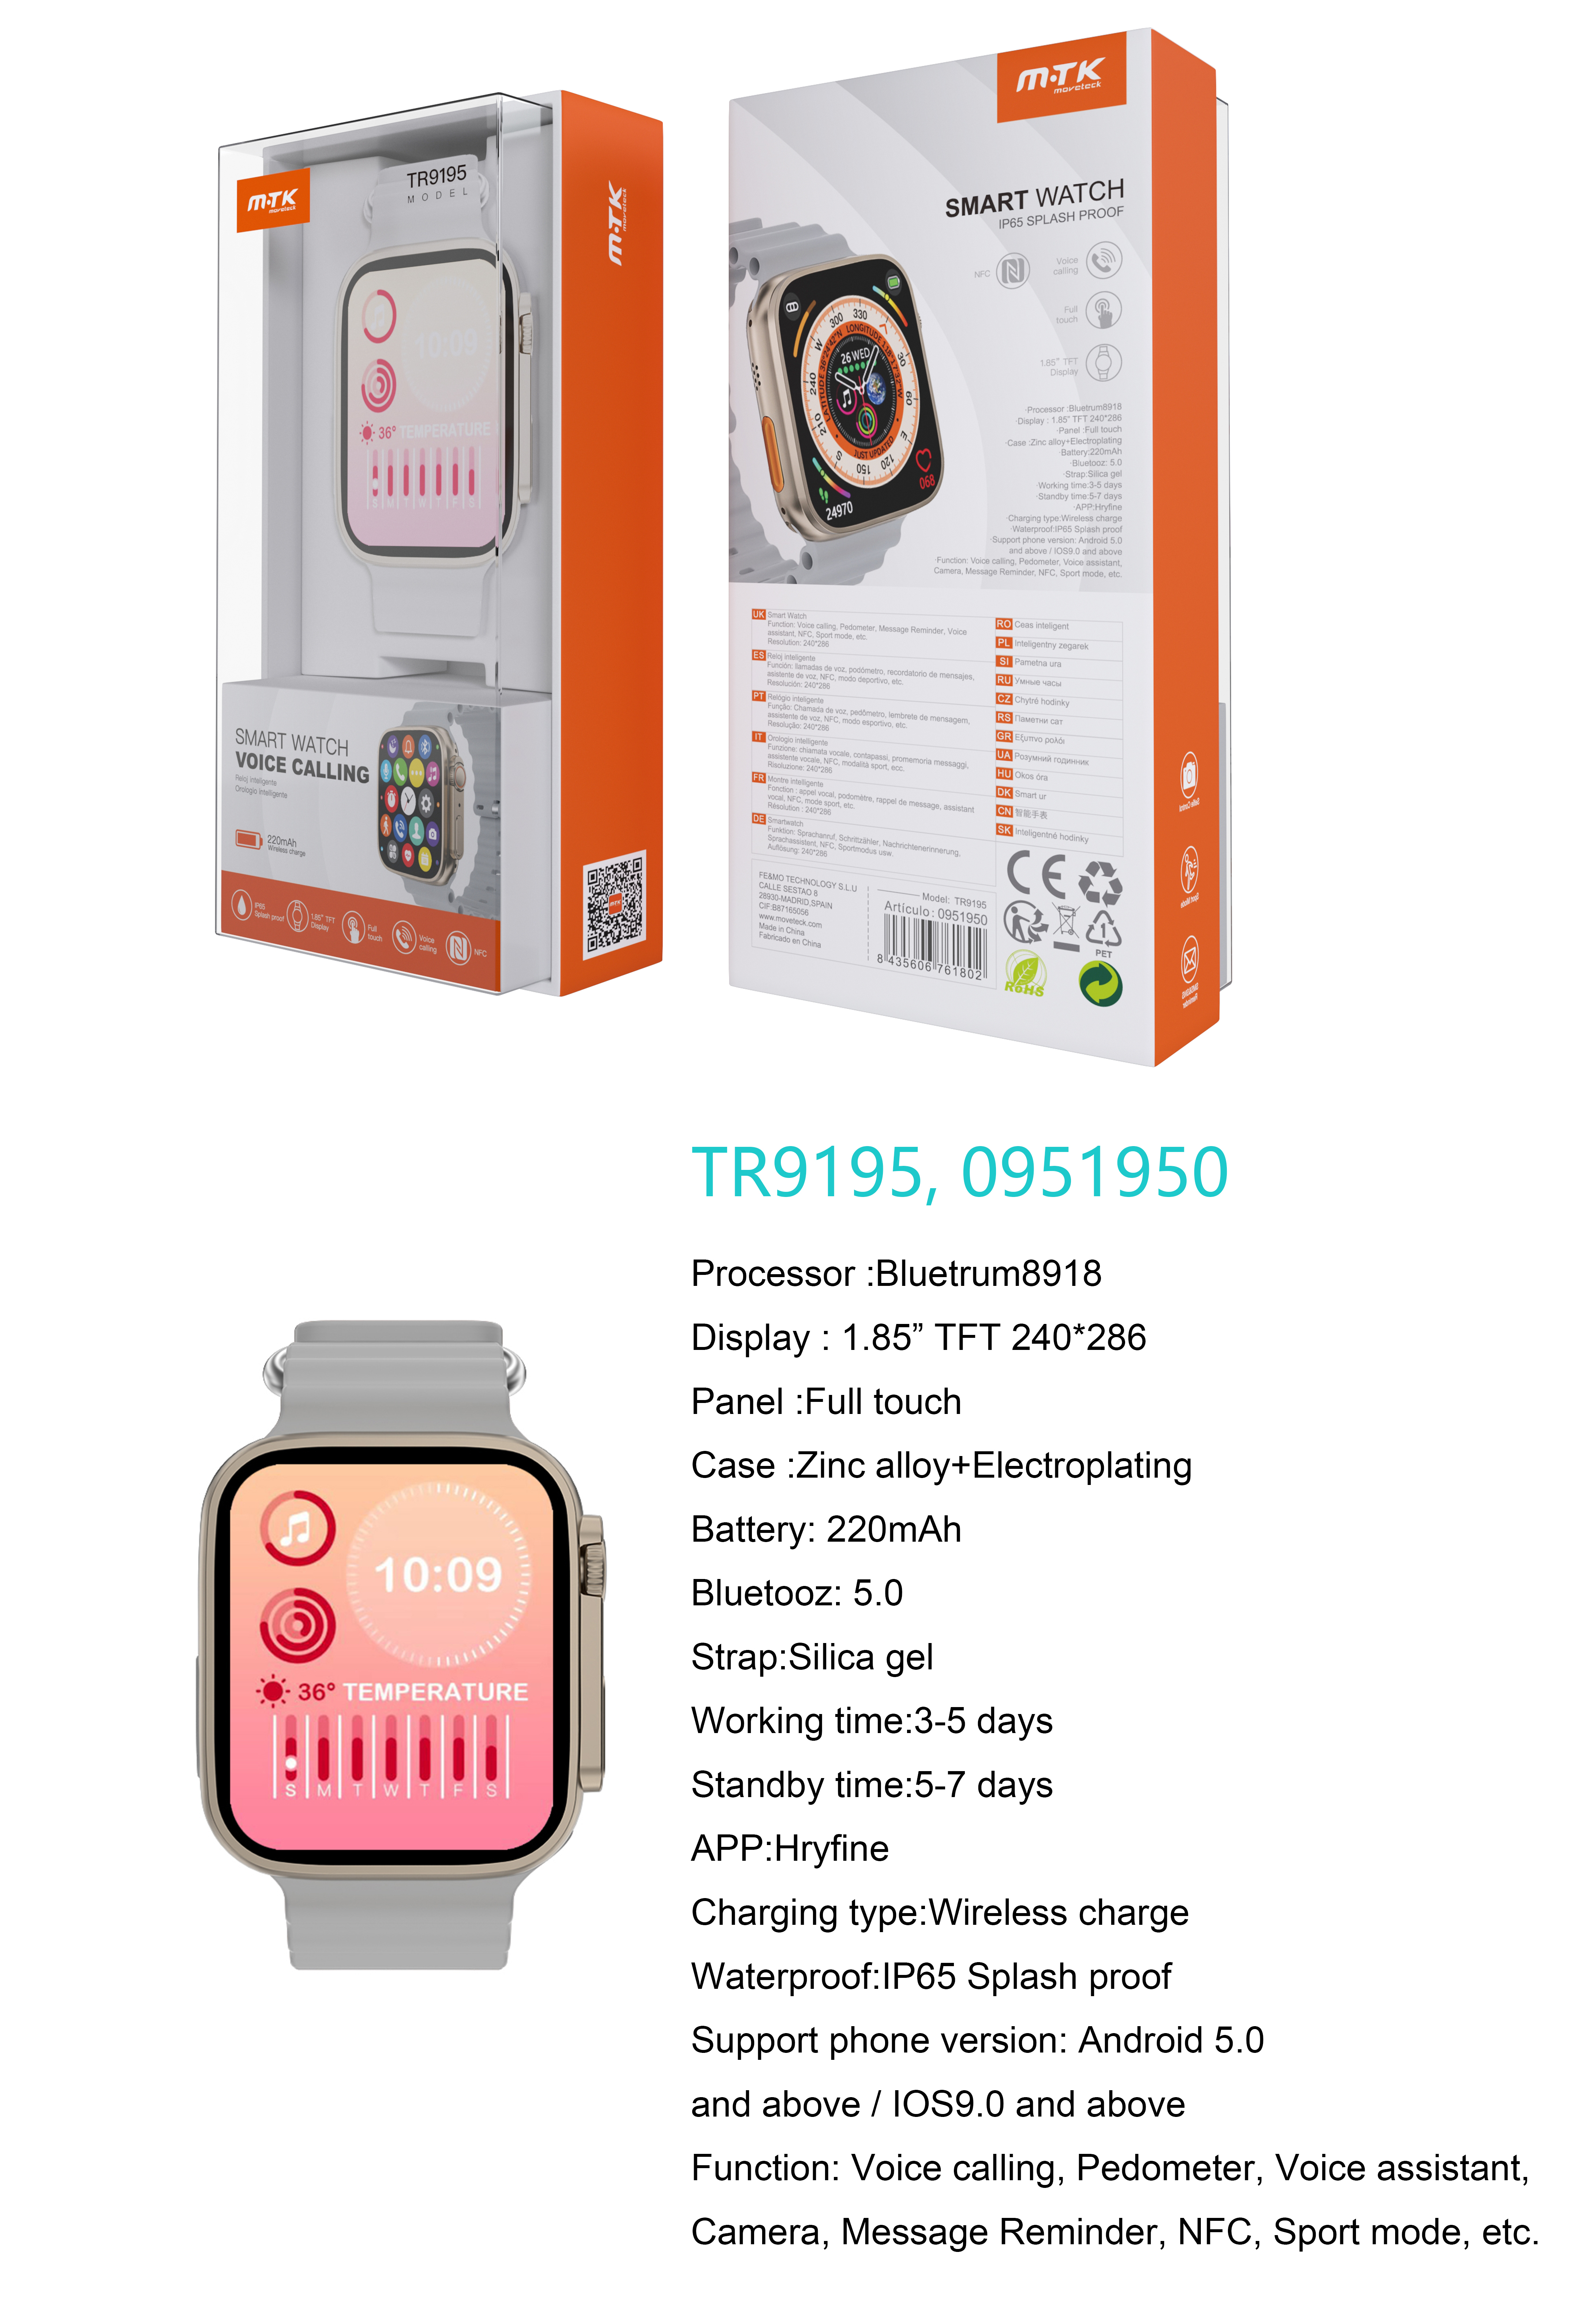 TR9195 BL Reloj Inteligente con bluetooth 5.0, Pantalla tactil de 1.85 pulgadas, Soporta NFC, llemadas, Asistente de Voz,Impermeable IP65, Bateria 220